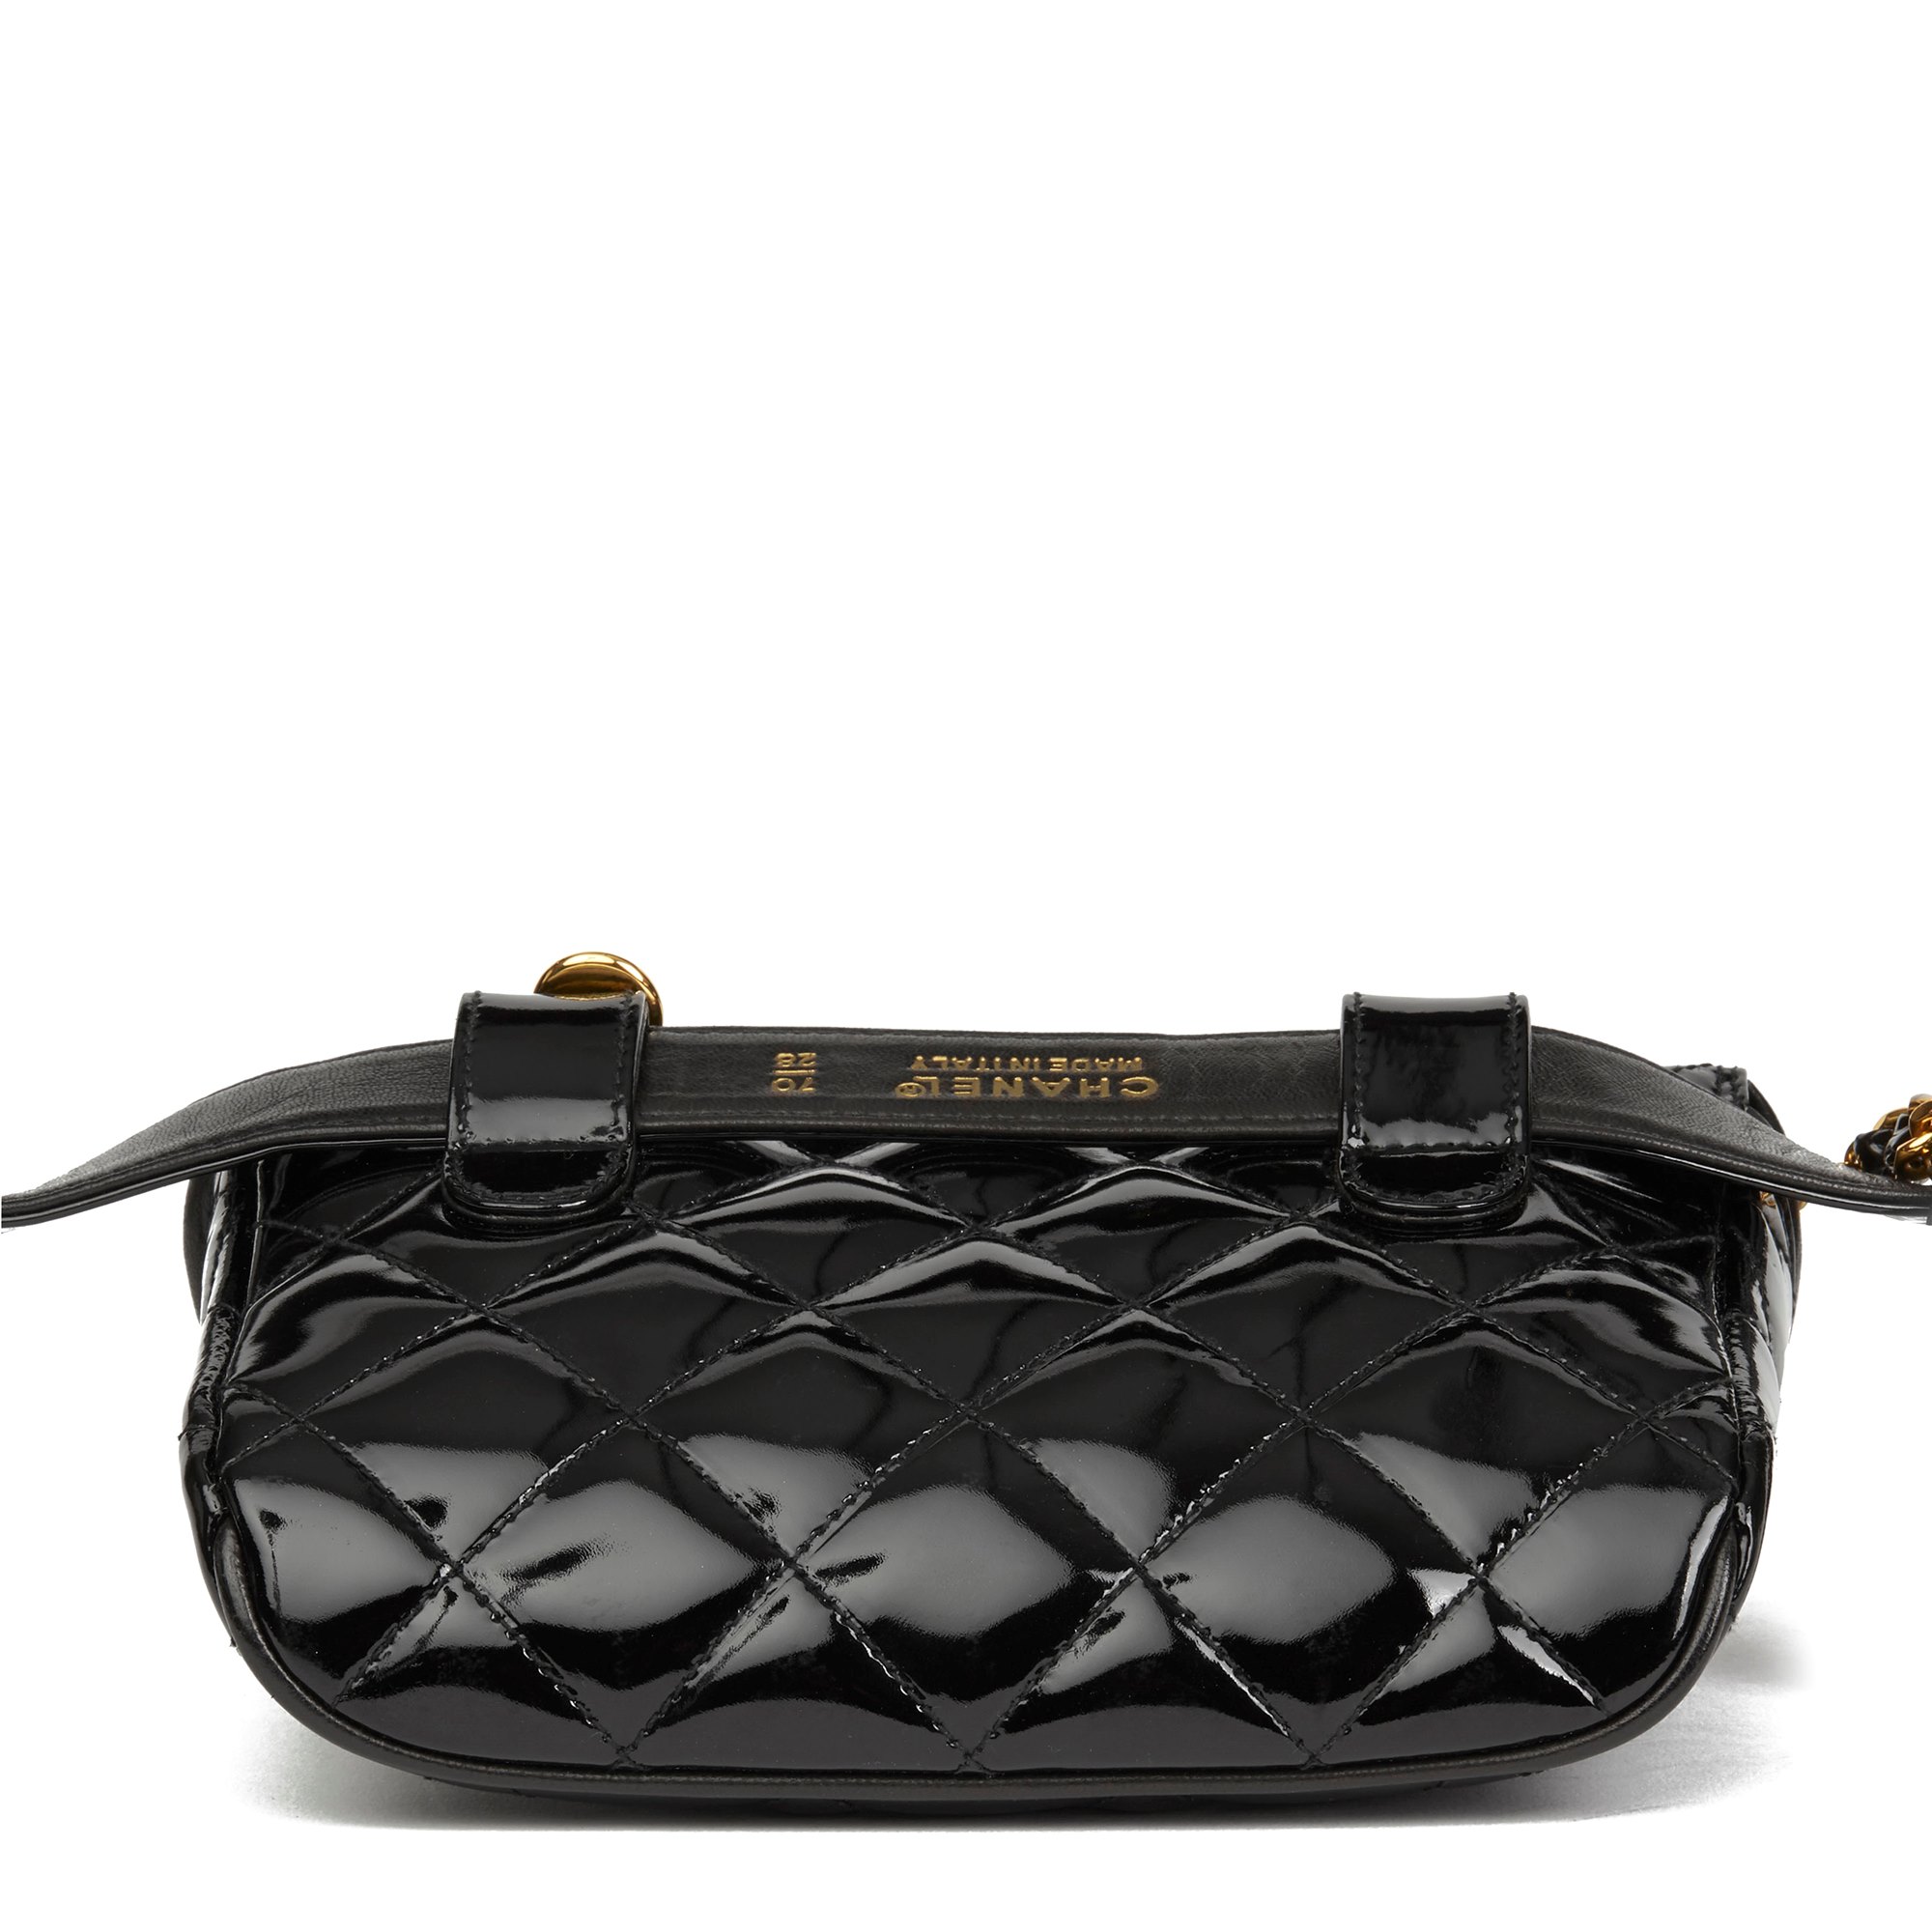 Chanel Black Quilted Patent Leather Vintage Timeless Belt Bag